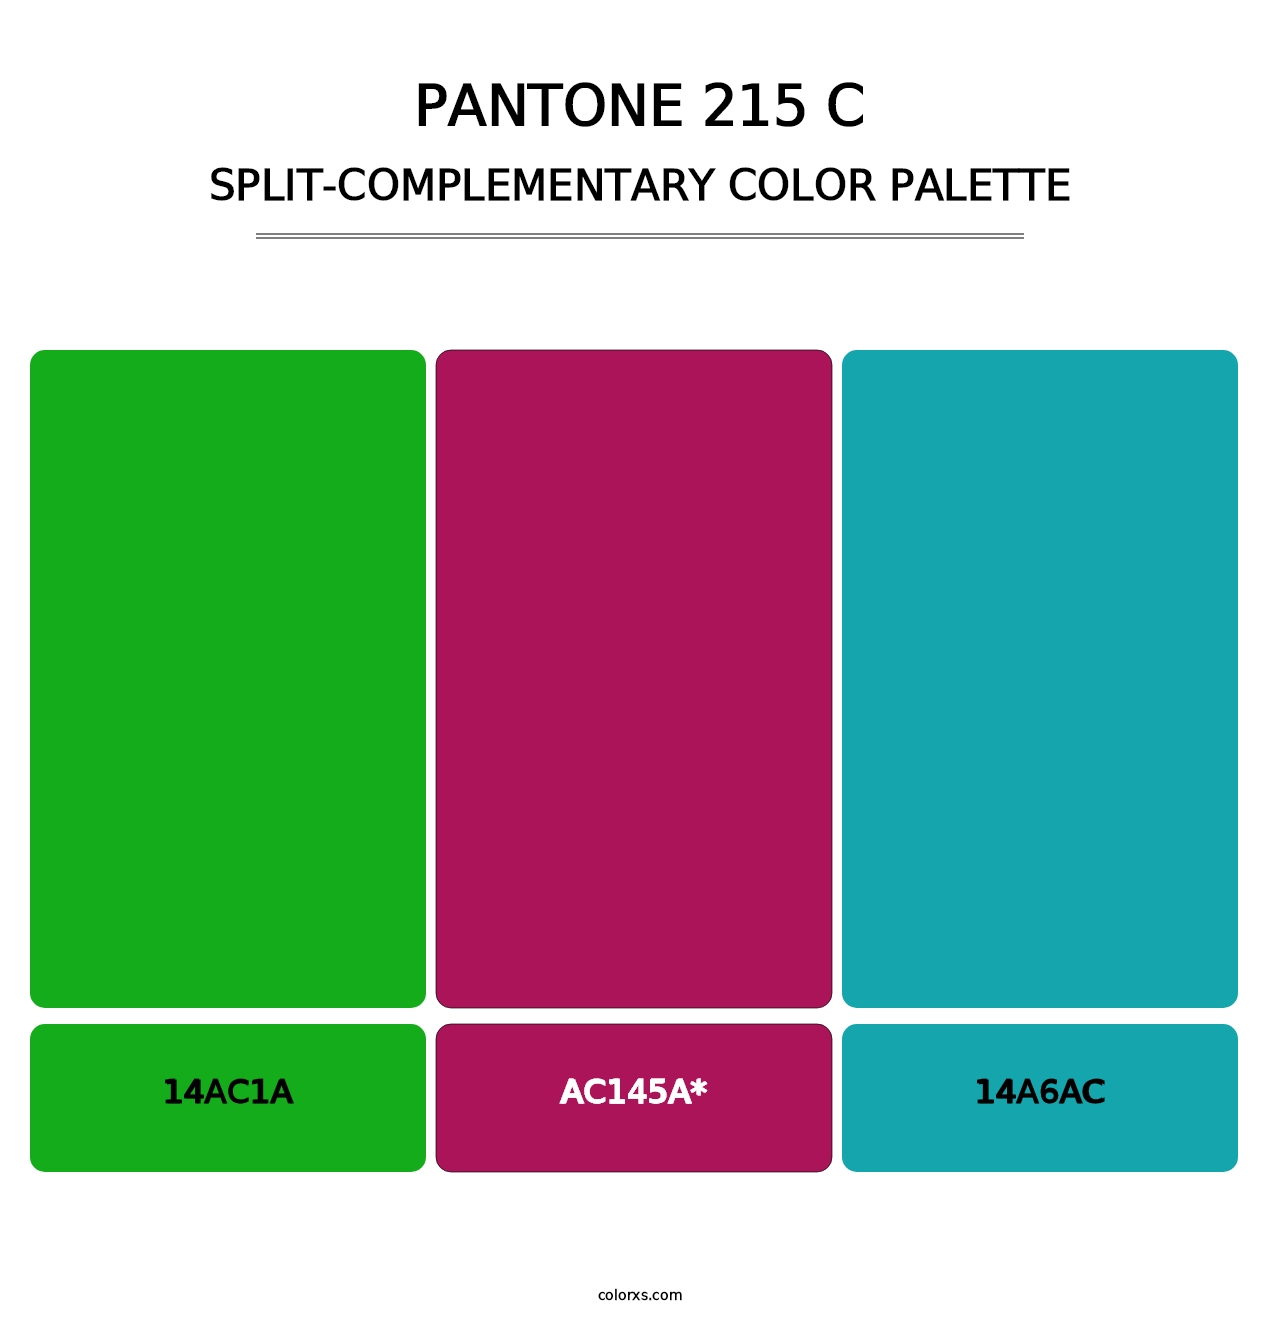 PANTONE 215 C - Split-Complementary Color Palette